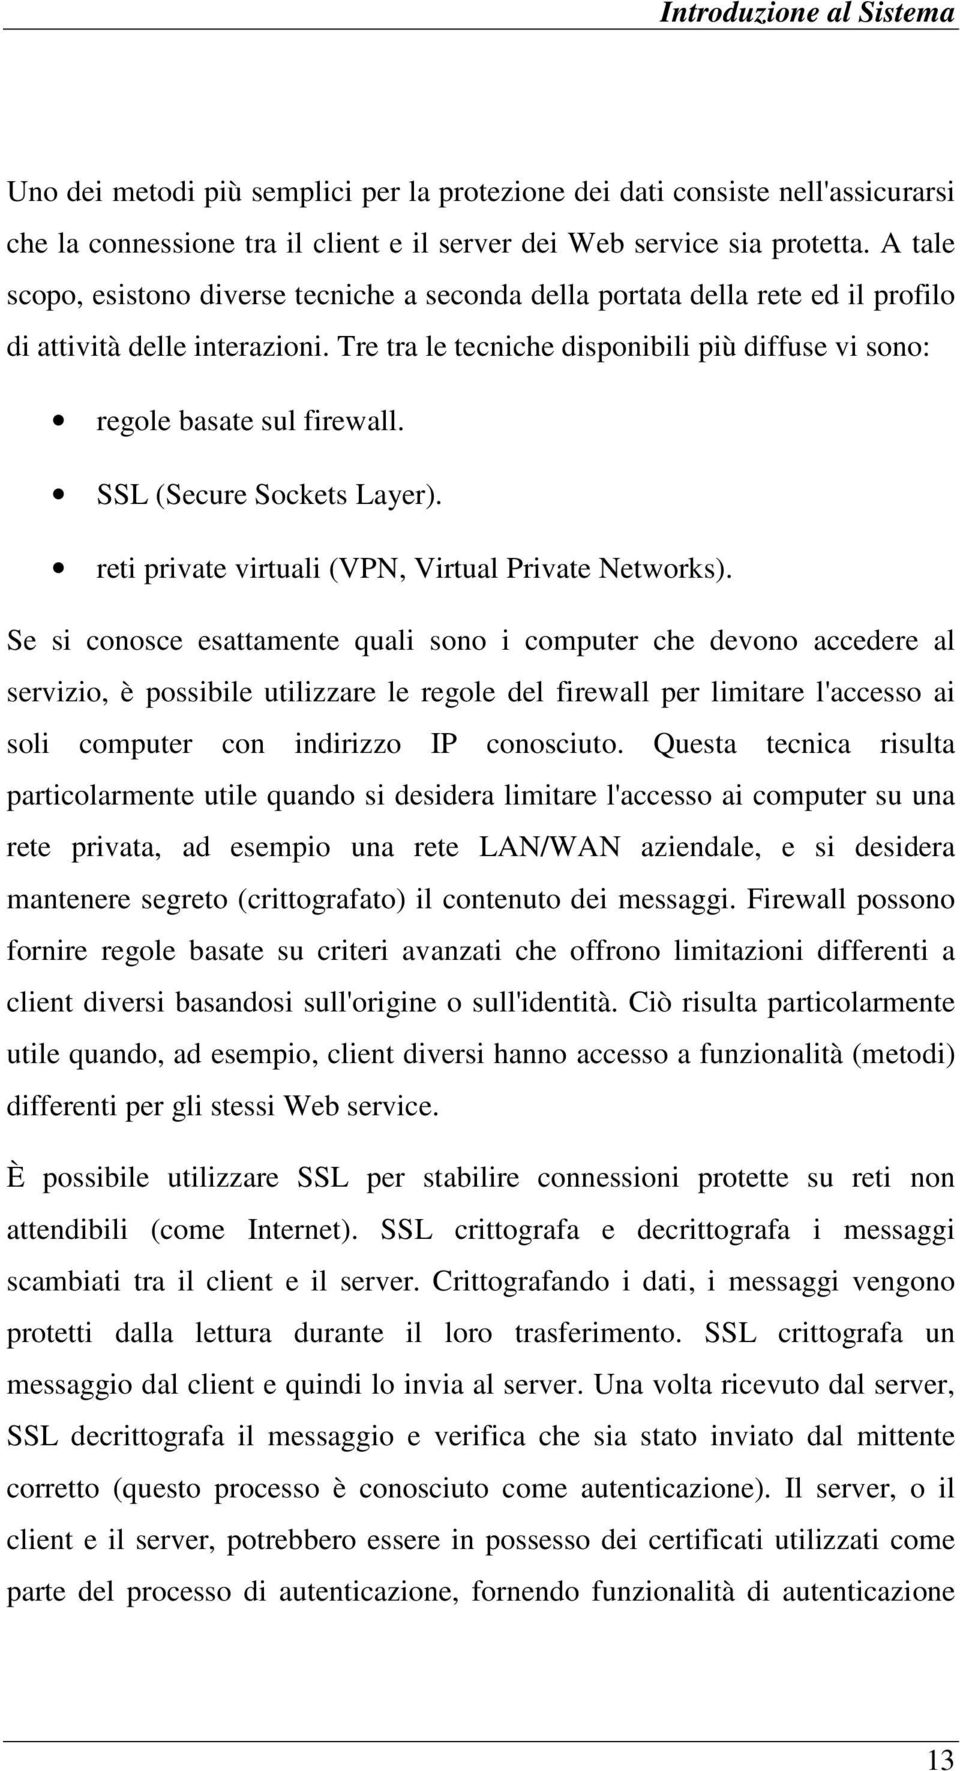 SSL (Secure Sockets Layer). reti private virtuali (VPN, Virtual Private Networks).